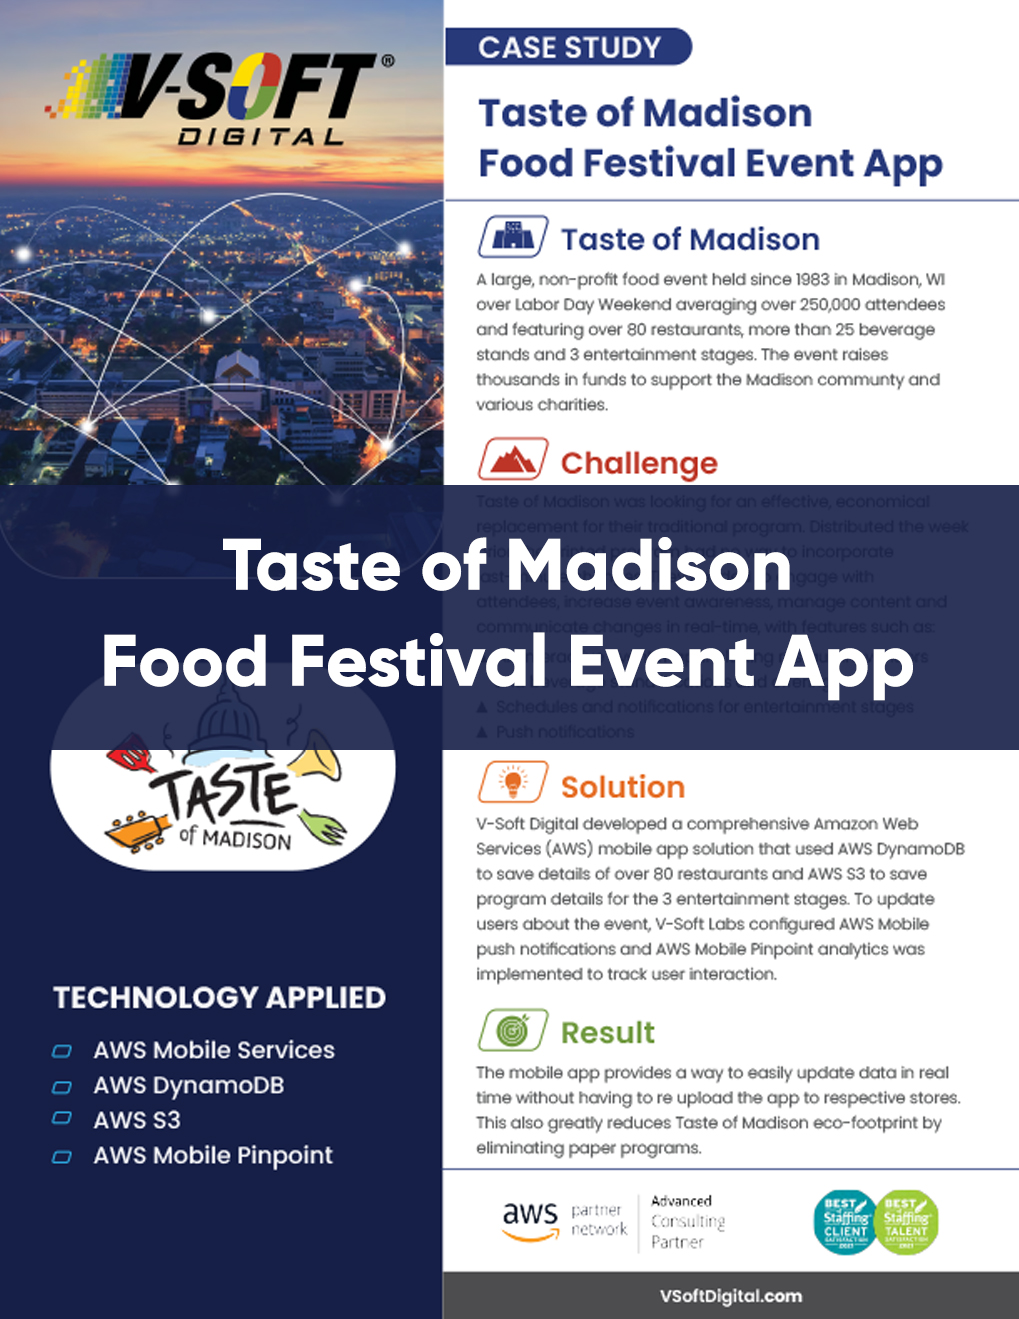 Taste of Madison AWS Mobile App